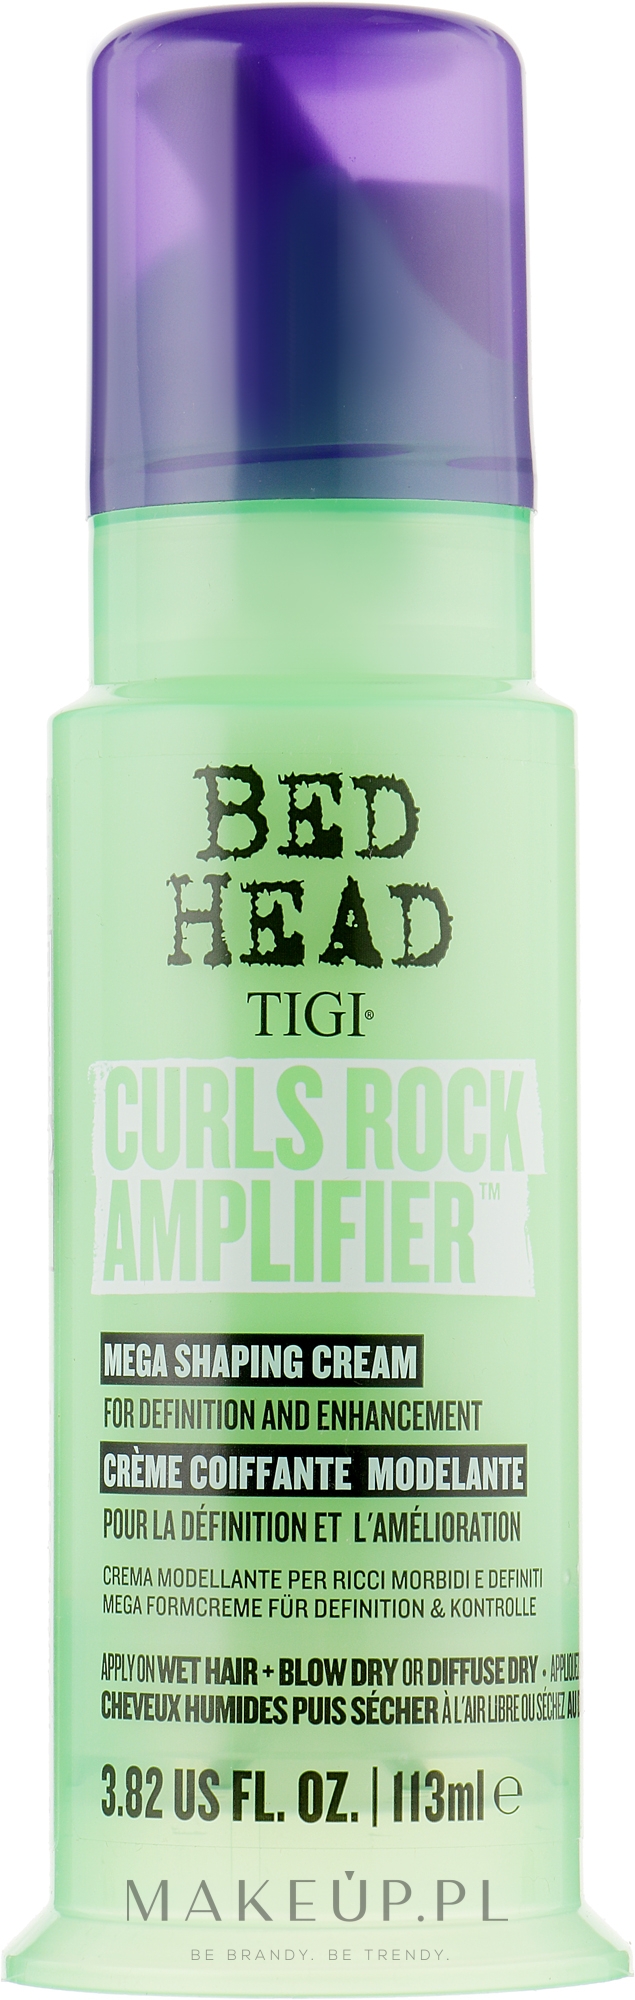 Krem do włosów kręconych - Tigi Bed Head Curls Rock Amplifier Curly Hair Cream — Zdjęcie 113 ml